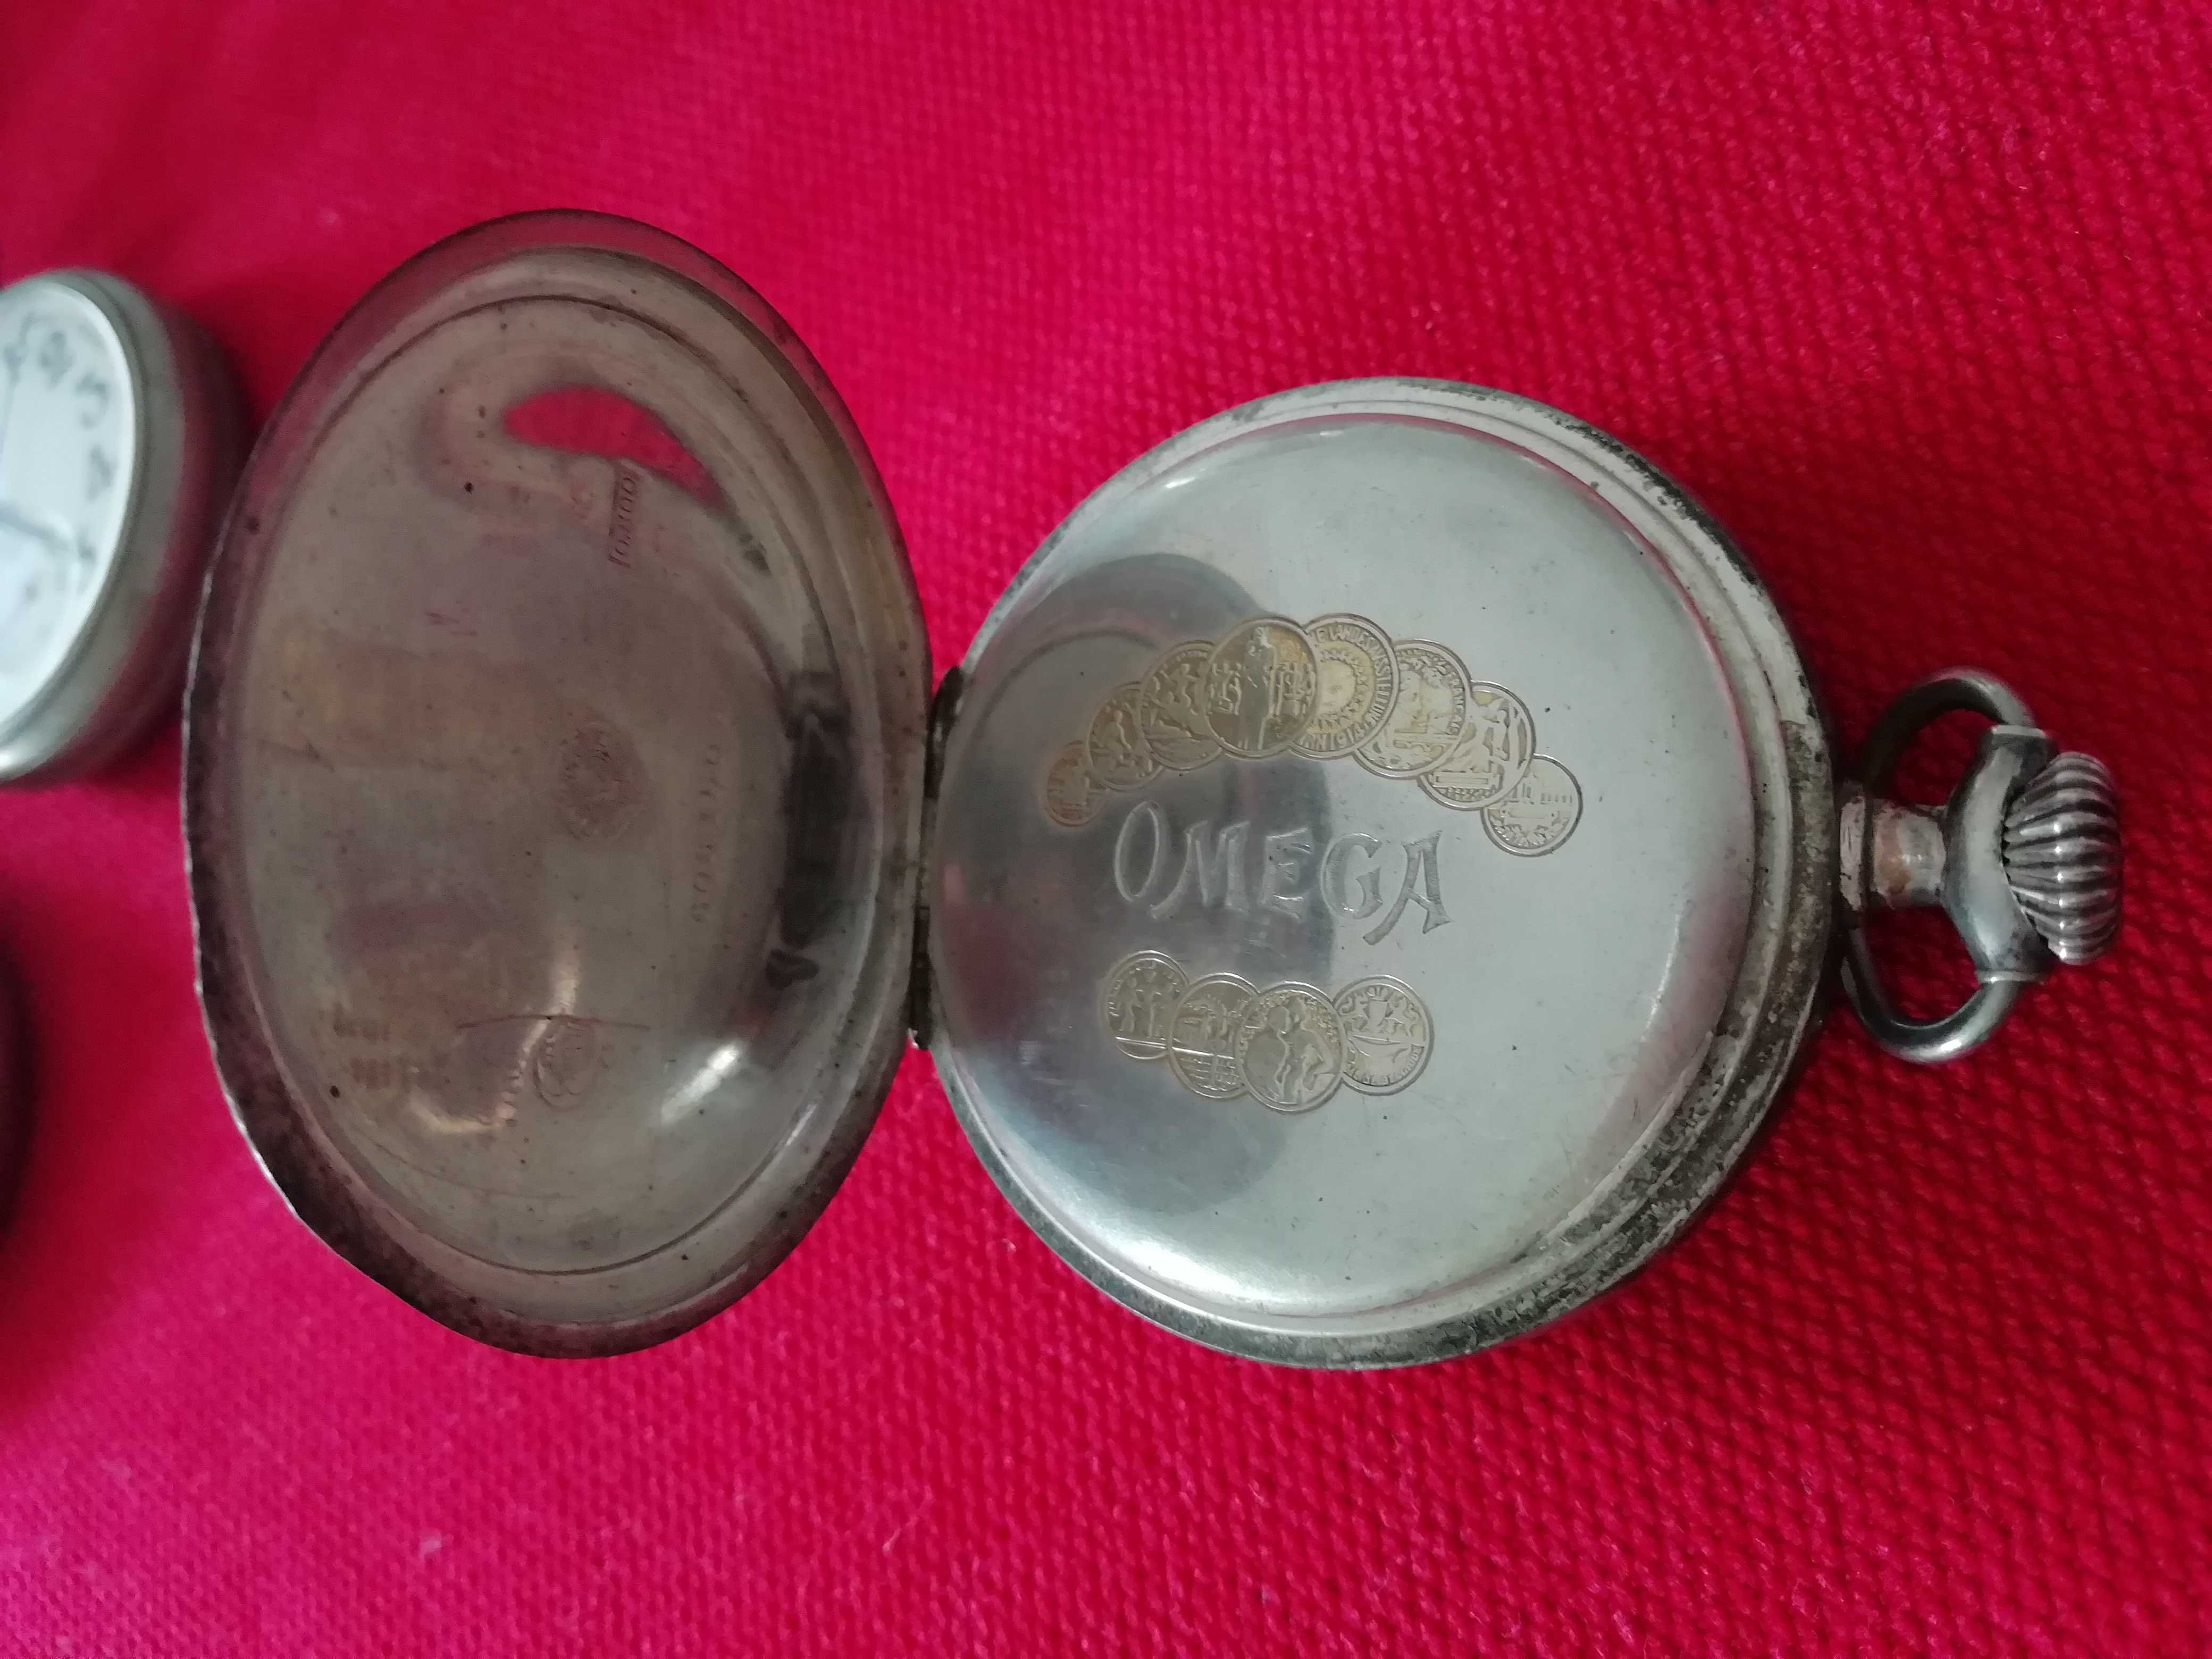 Omega - Relógio de bolso contrastado -C. 1900